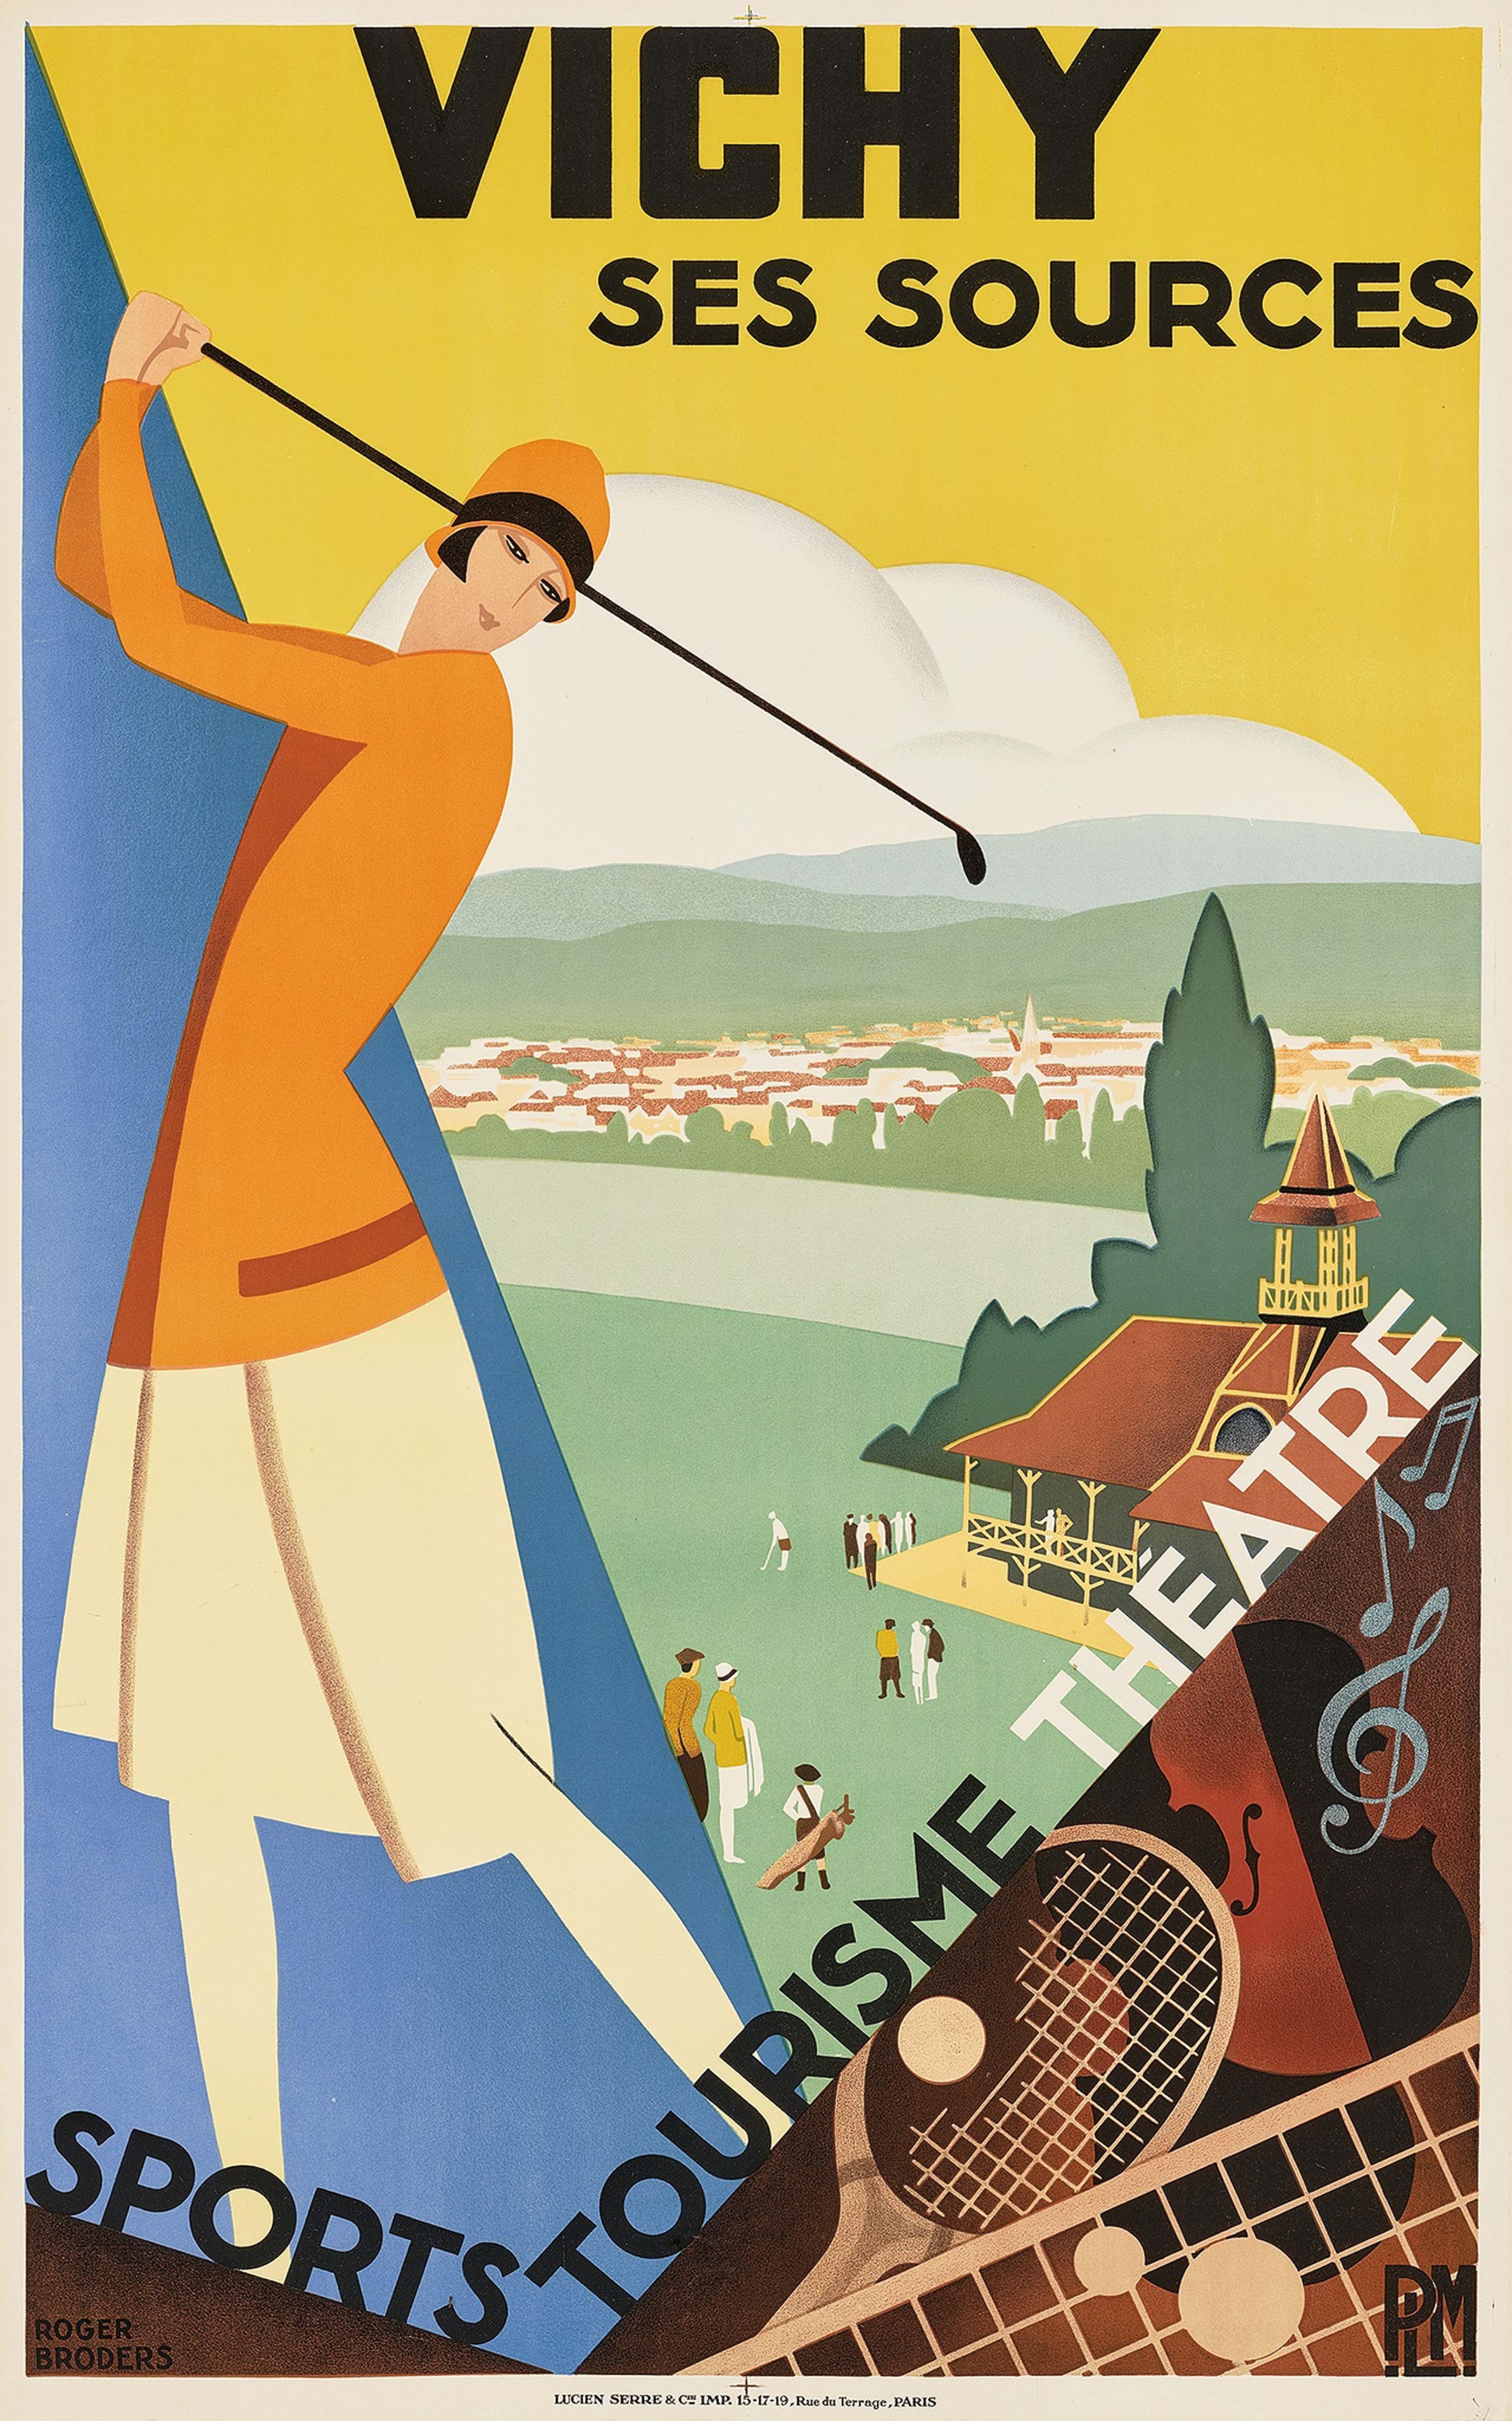 Roger Broders Print – Original Vintage PLM Paris Lyon Mittelmeerbahn-Reiseplakat Vichy Golf, Vintage